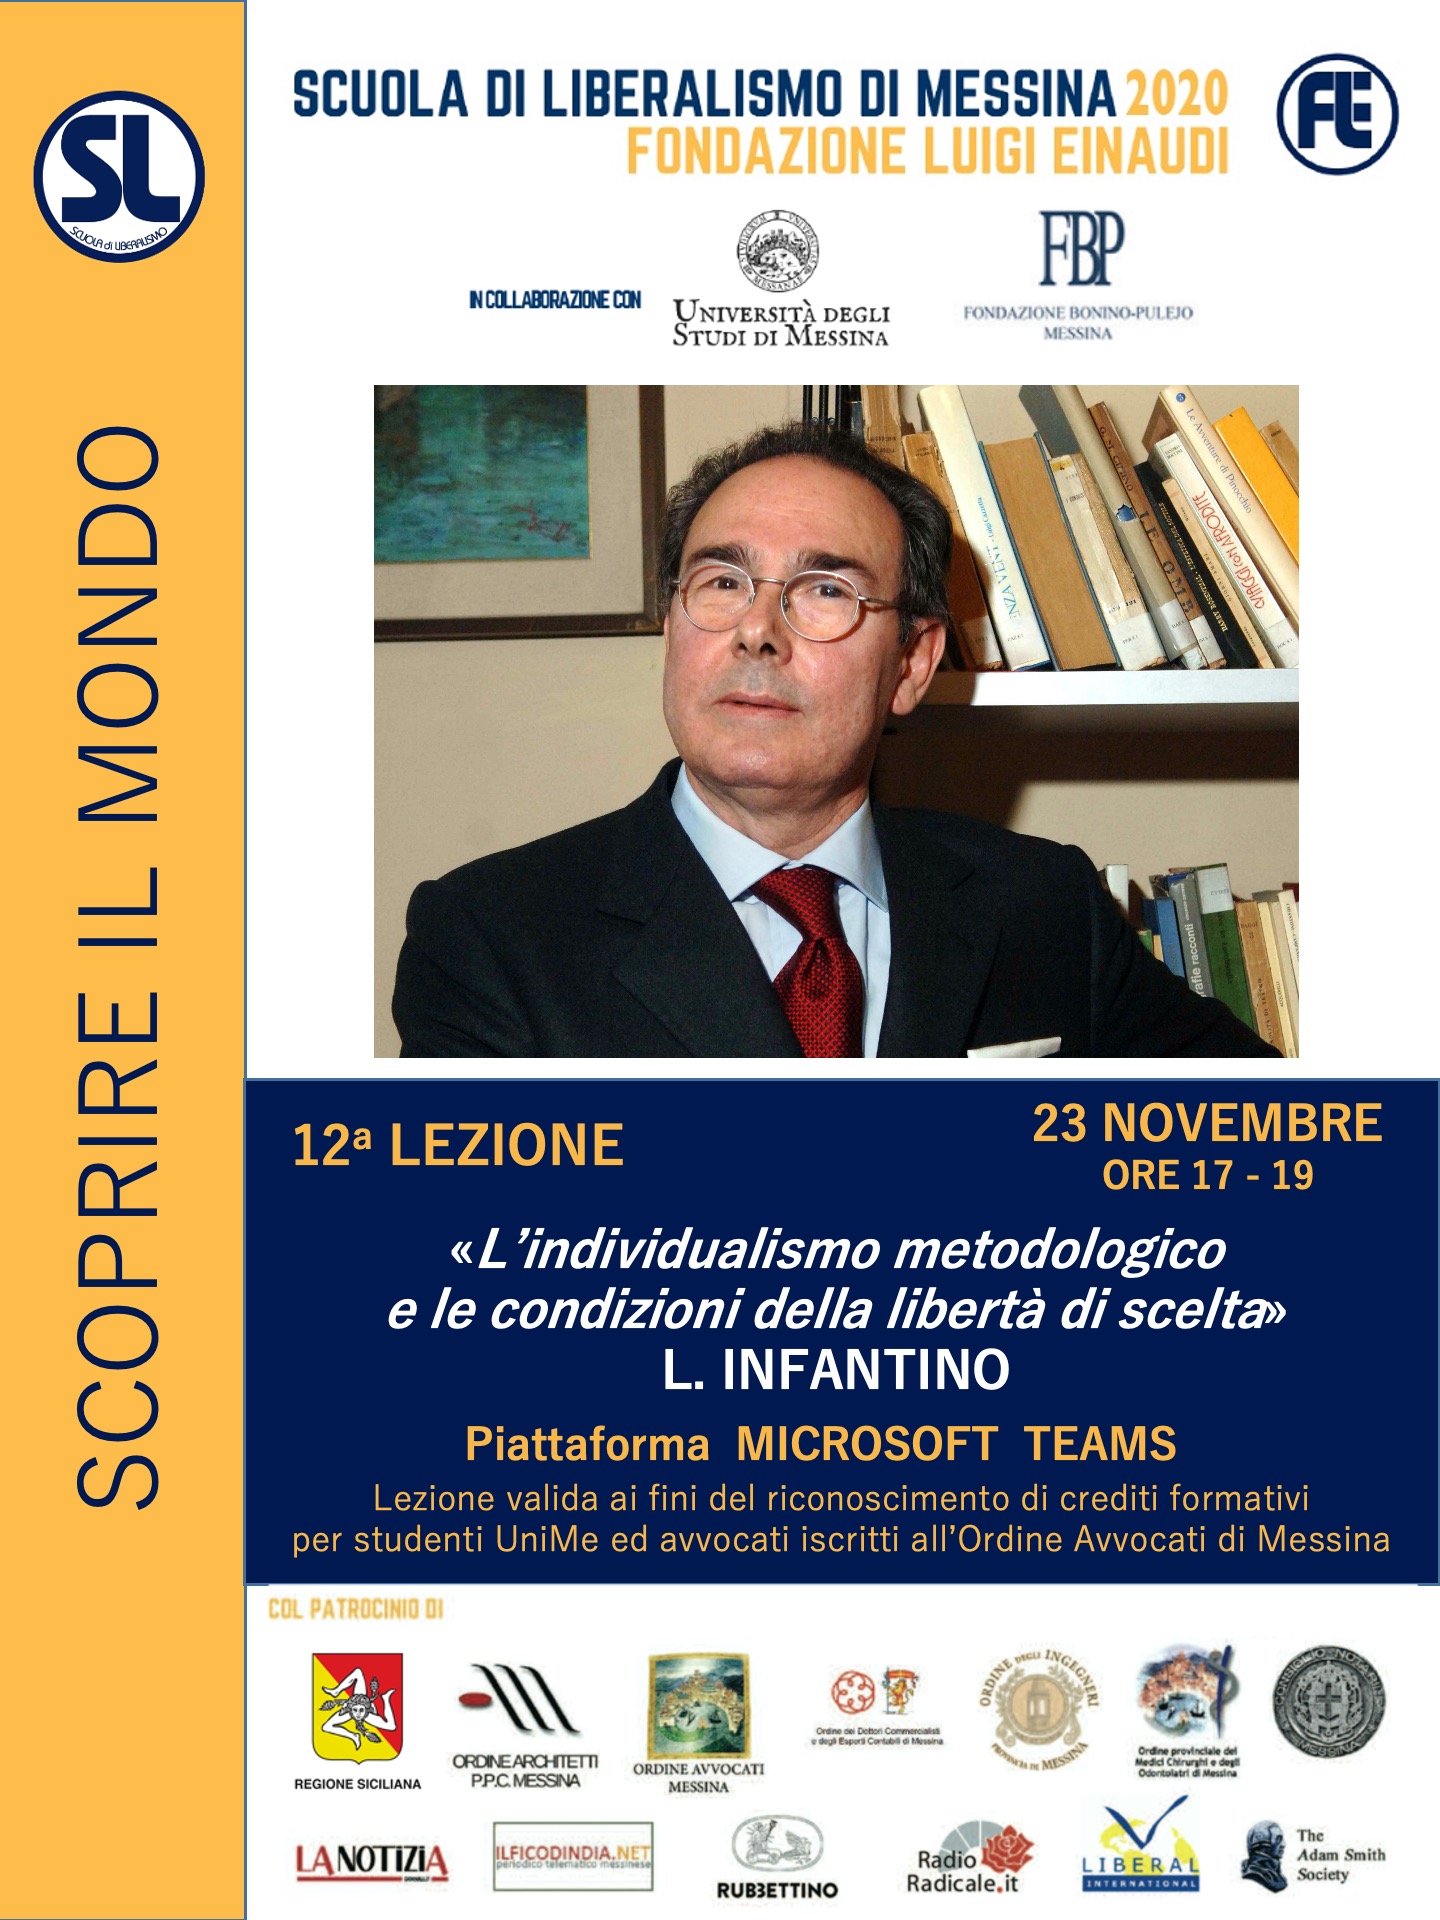 Scuola di Liberalismo 2020 Messina: 23 novembre lezione di Lorenzo Infantino